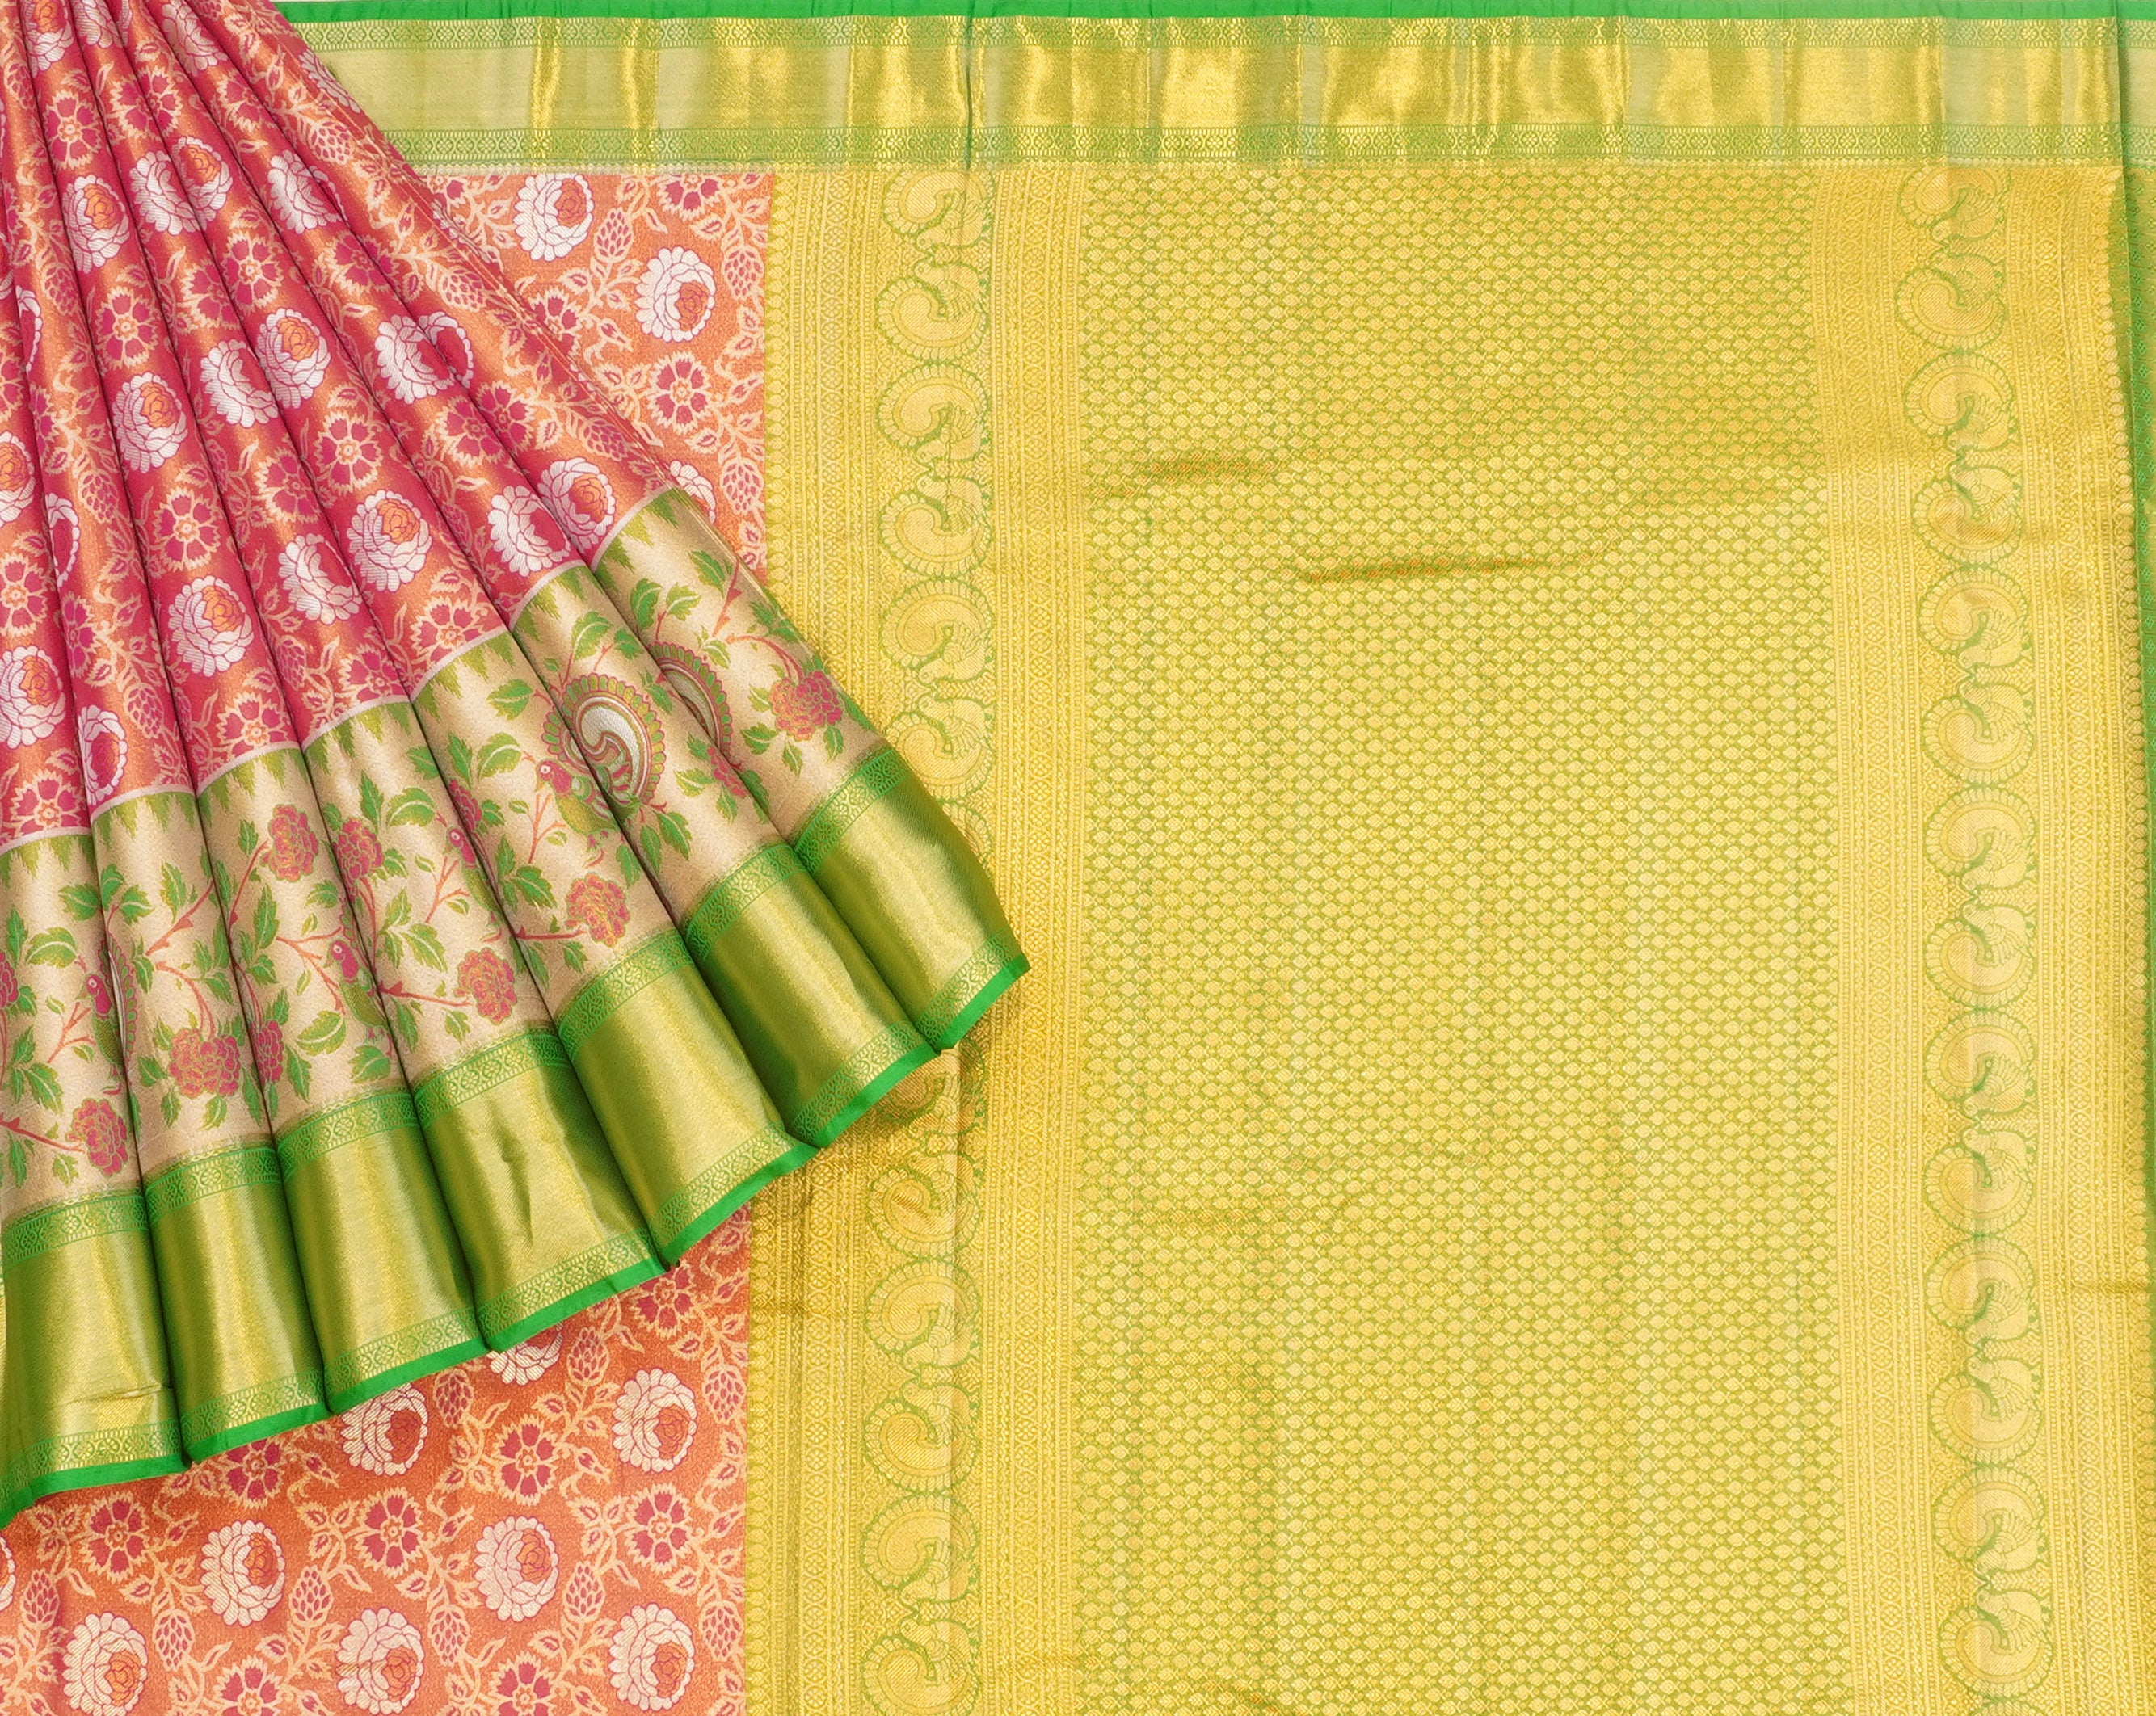 JSB- 9634 | Pink & Green Kanchi Tissue Pattu Saree